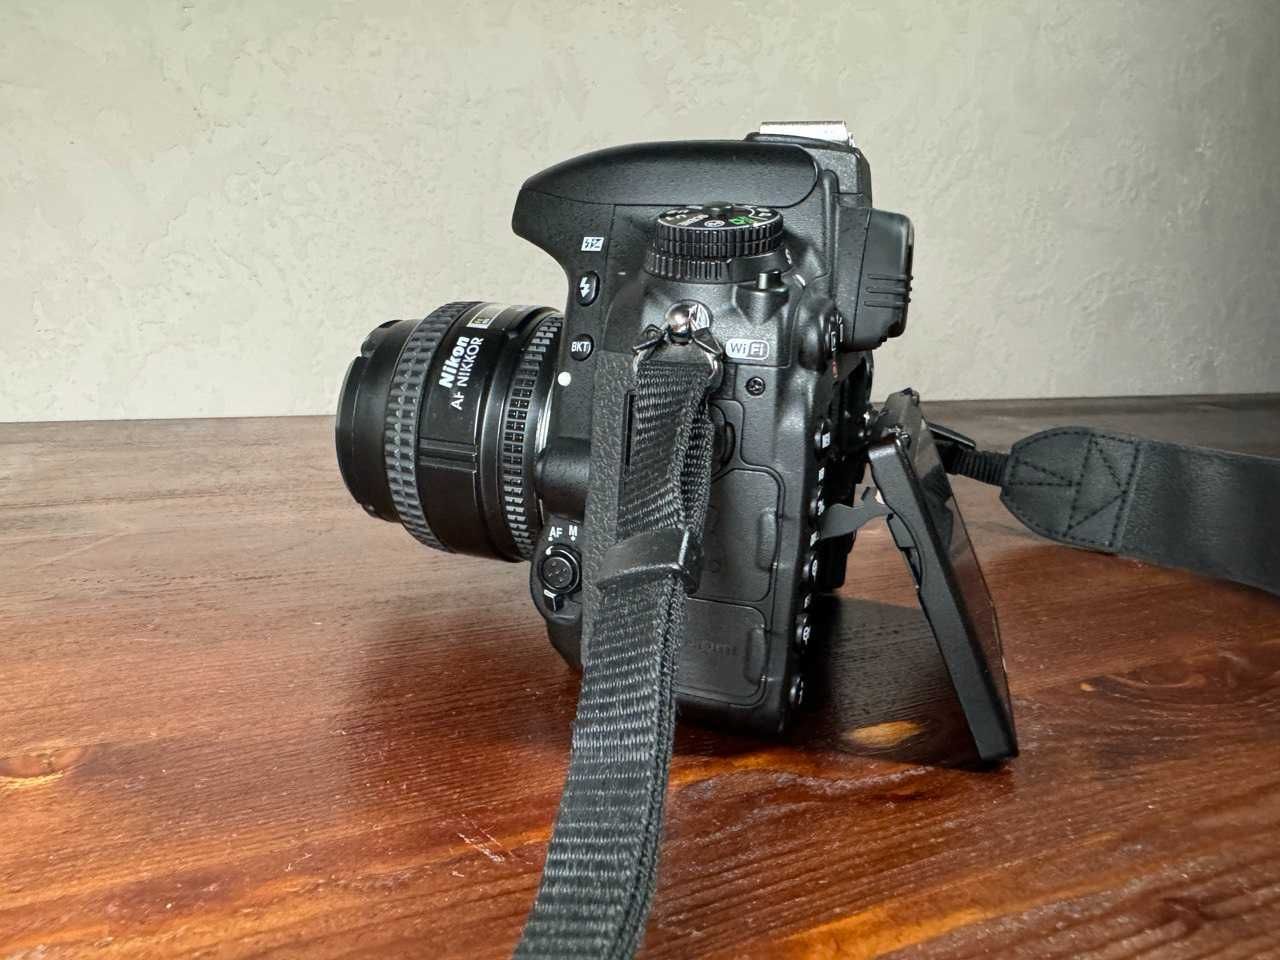 Nikon D750 полнокадровая профессиональная зеркальная камера